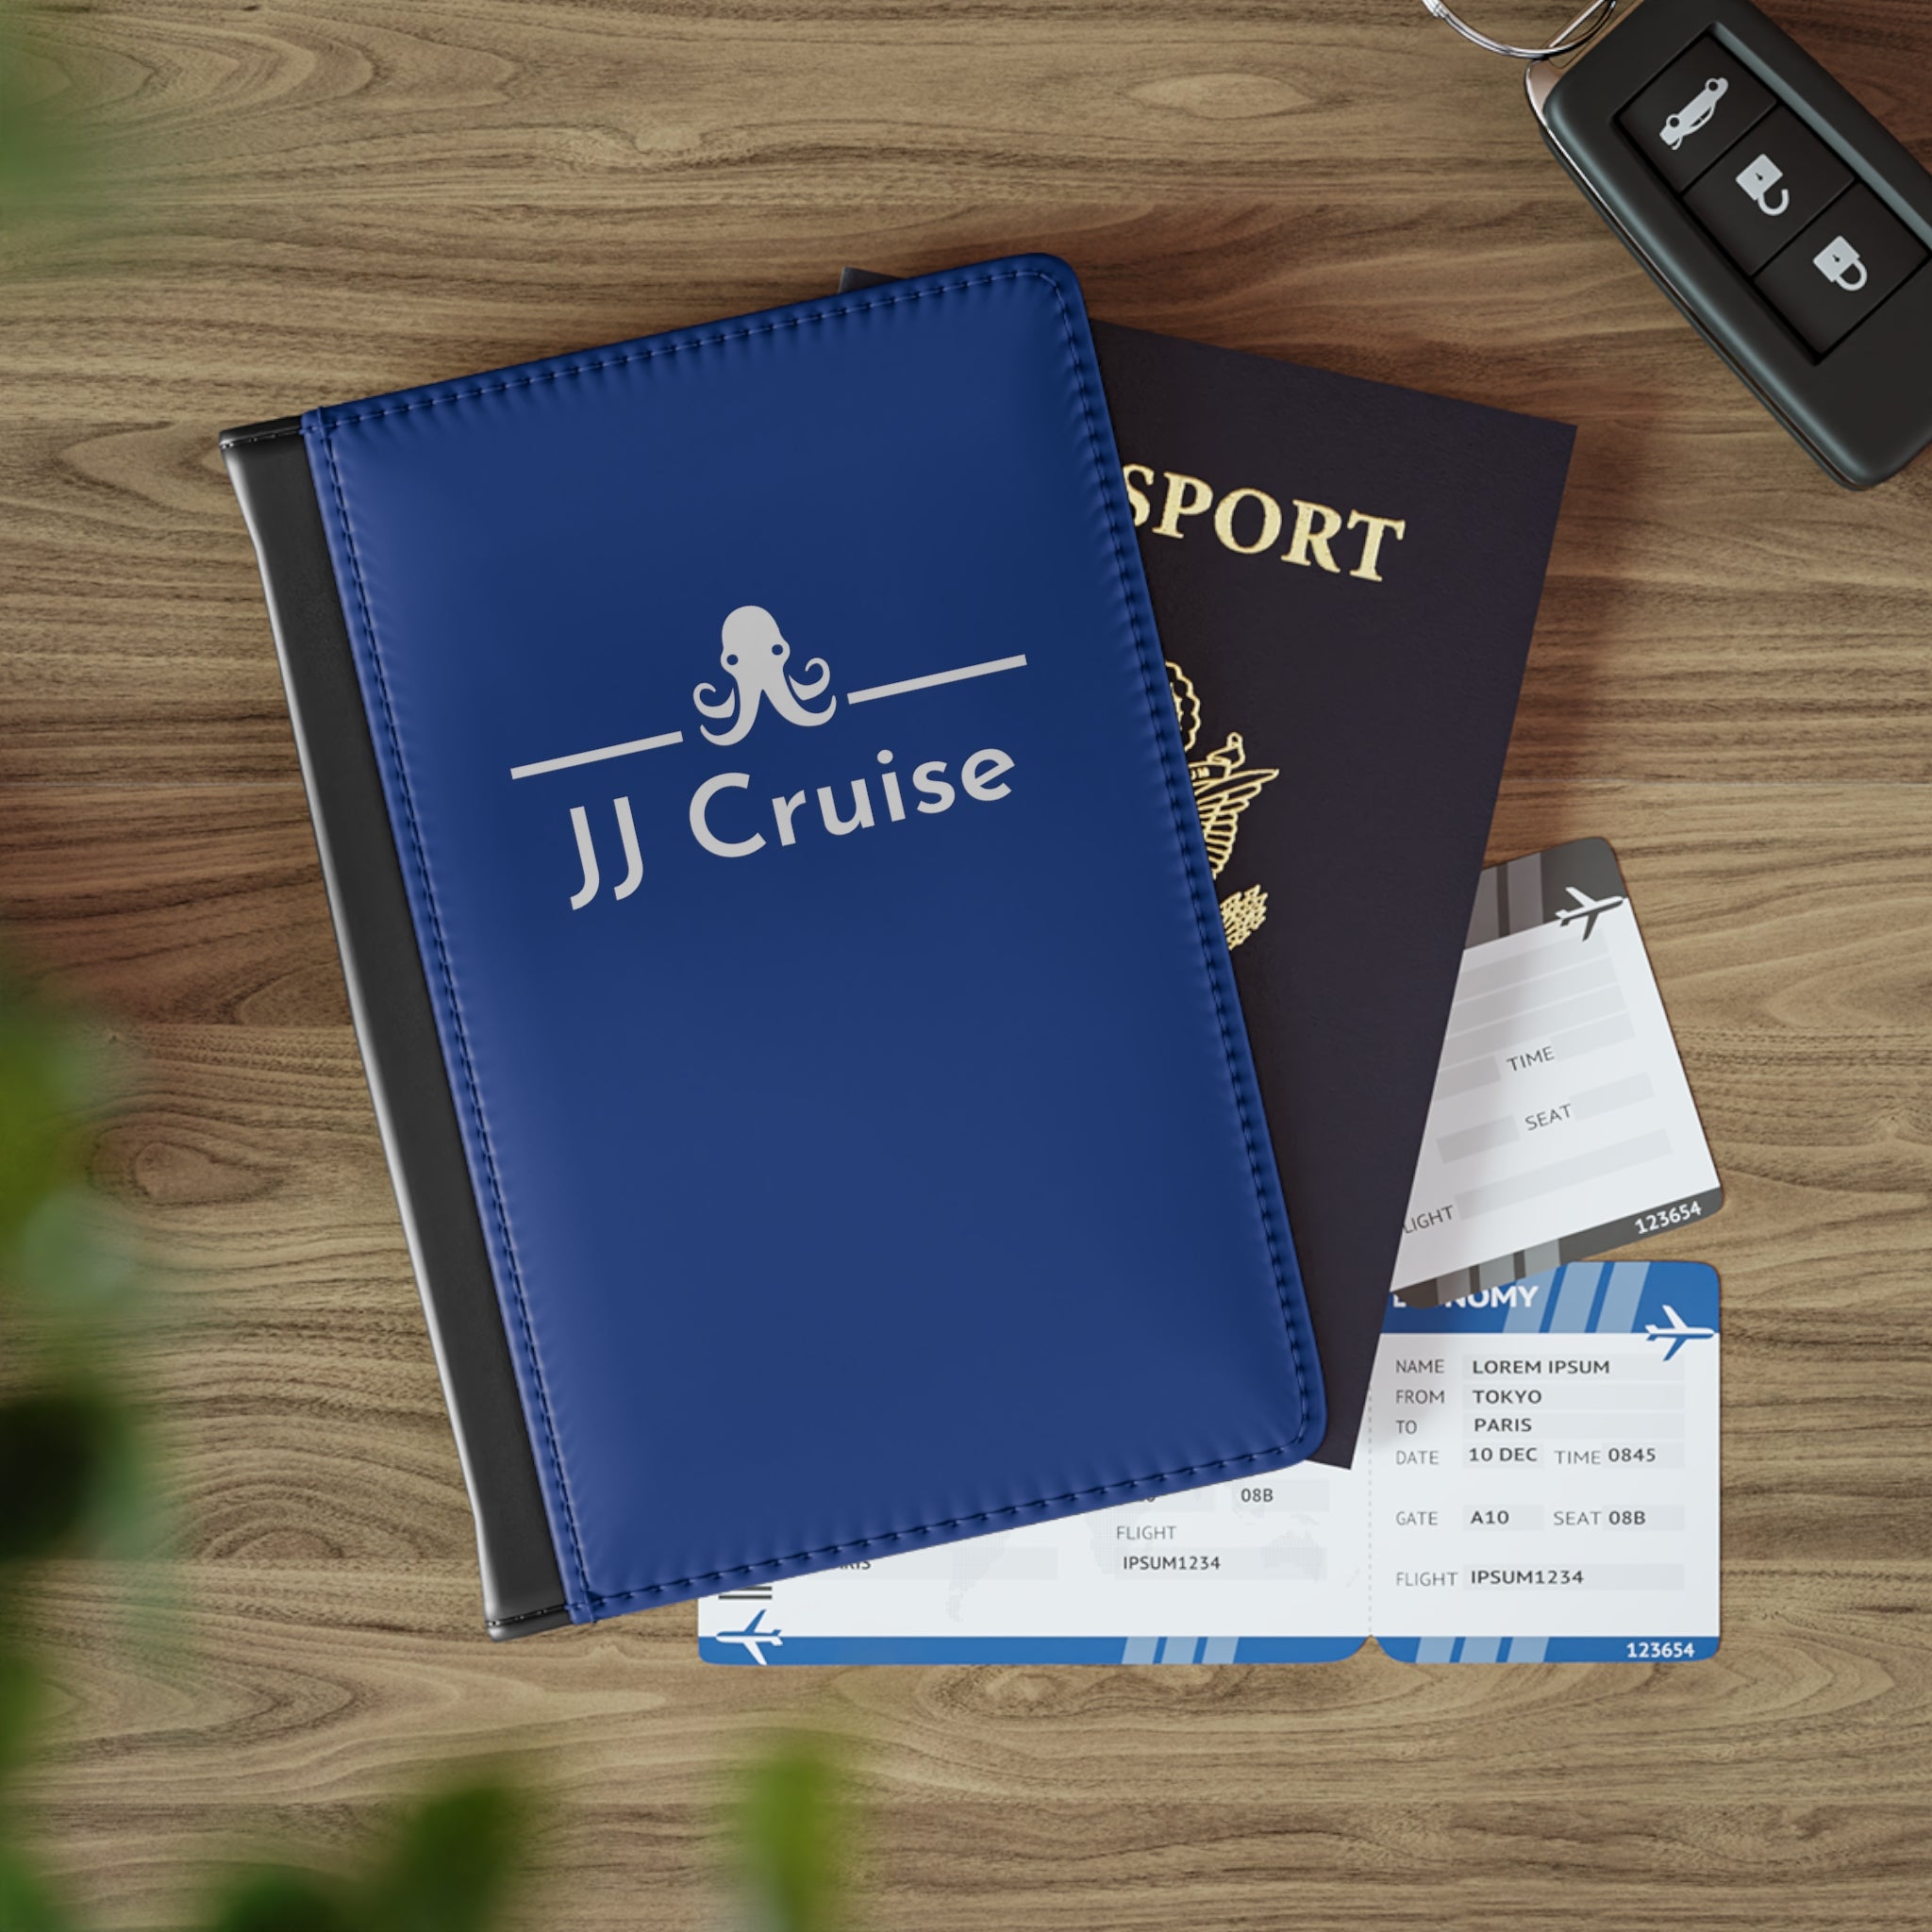 JJ Cruise Branded Passport Cover